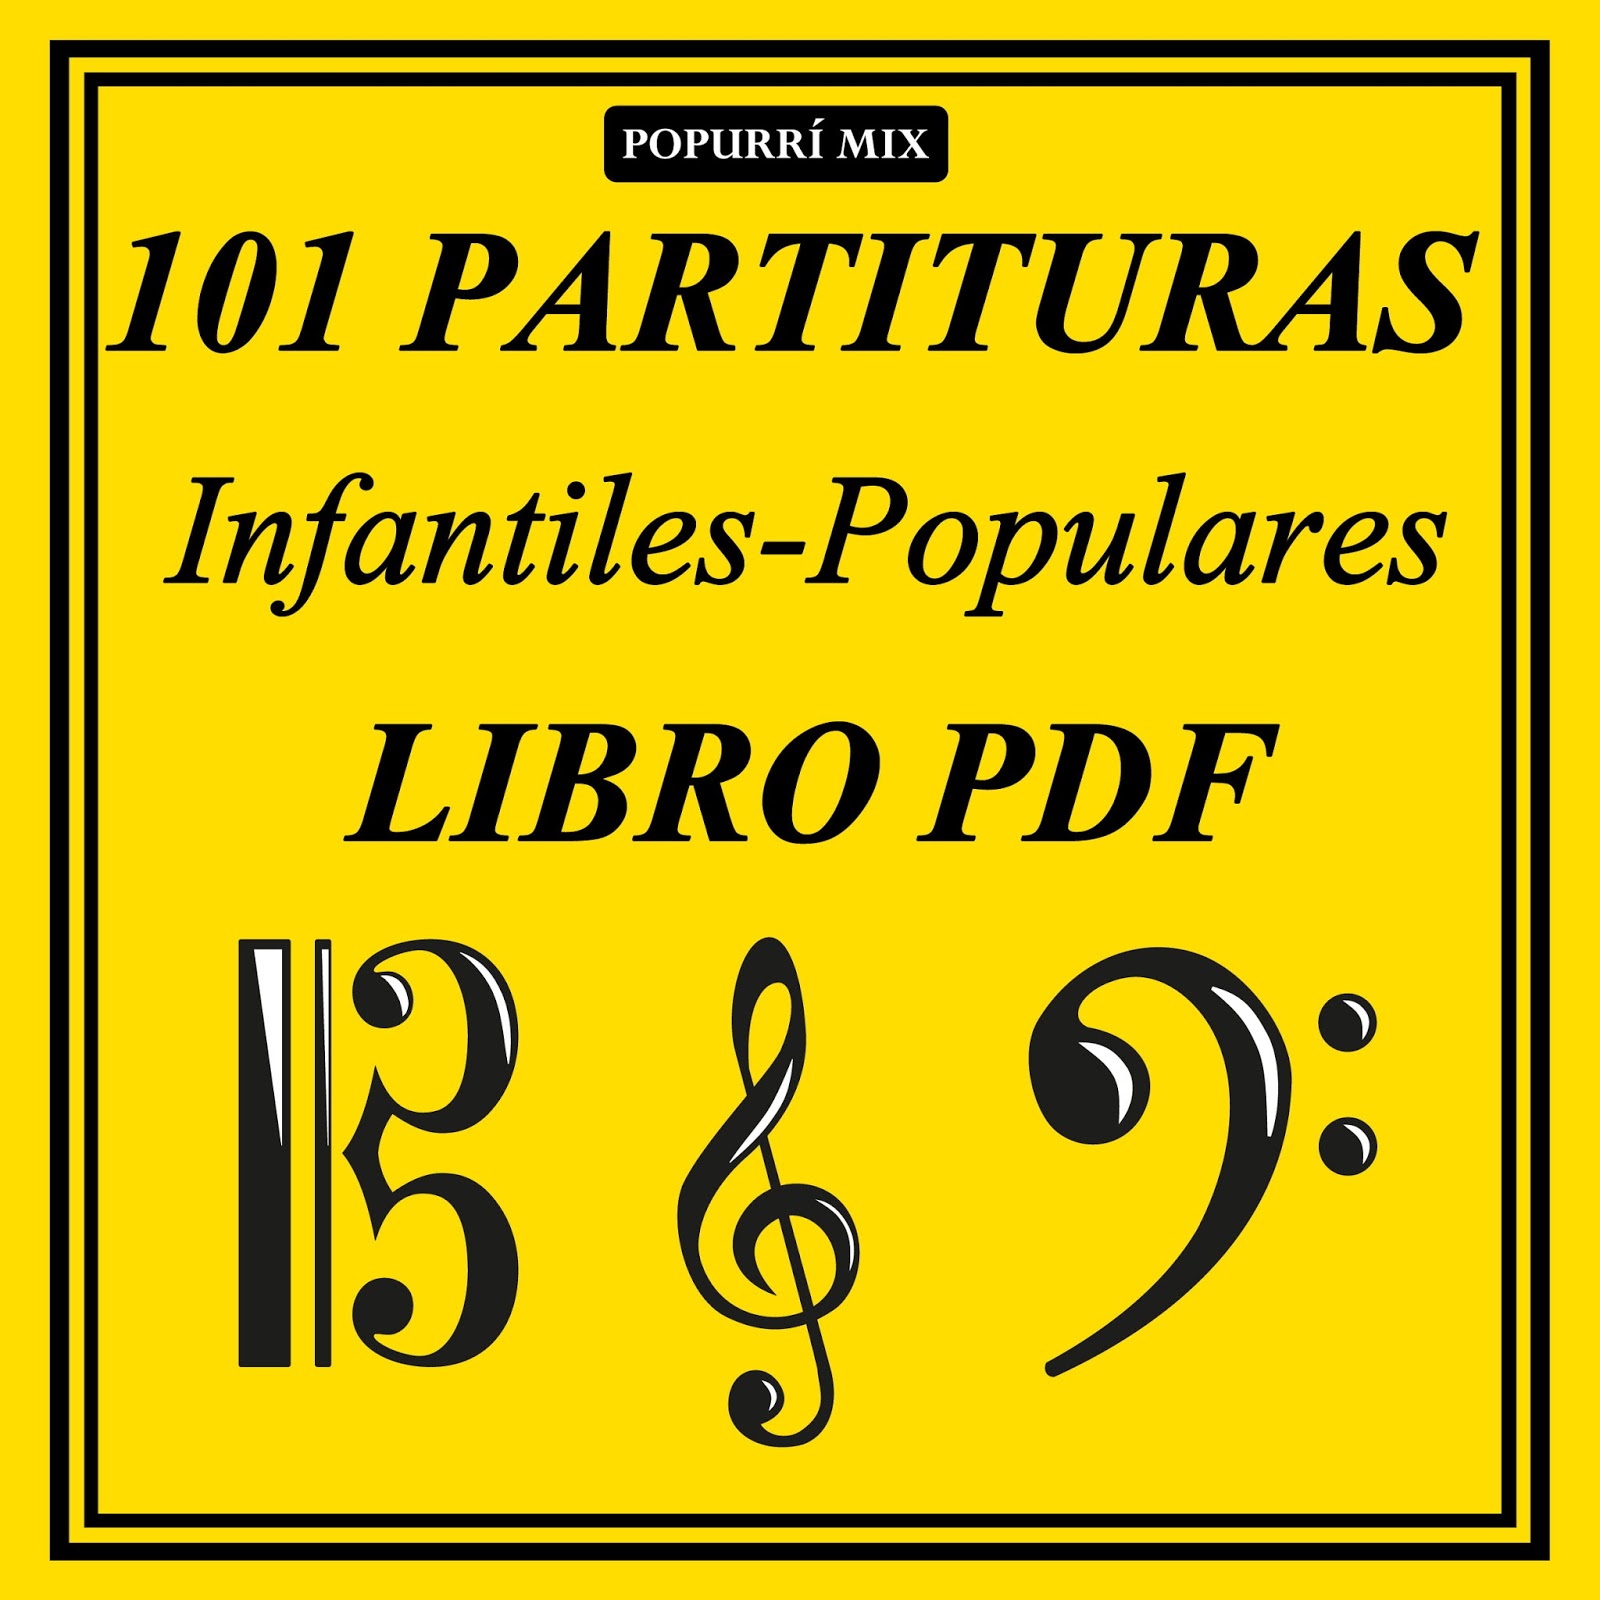 diegosax: 101 Partituras Populares e Infantiles Libro PDF Popurrí Mix